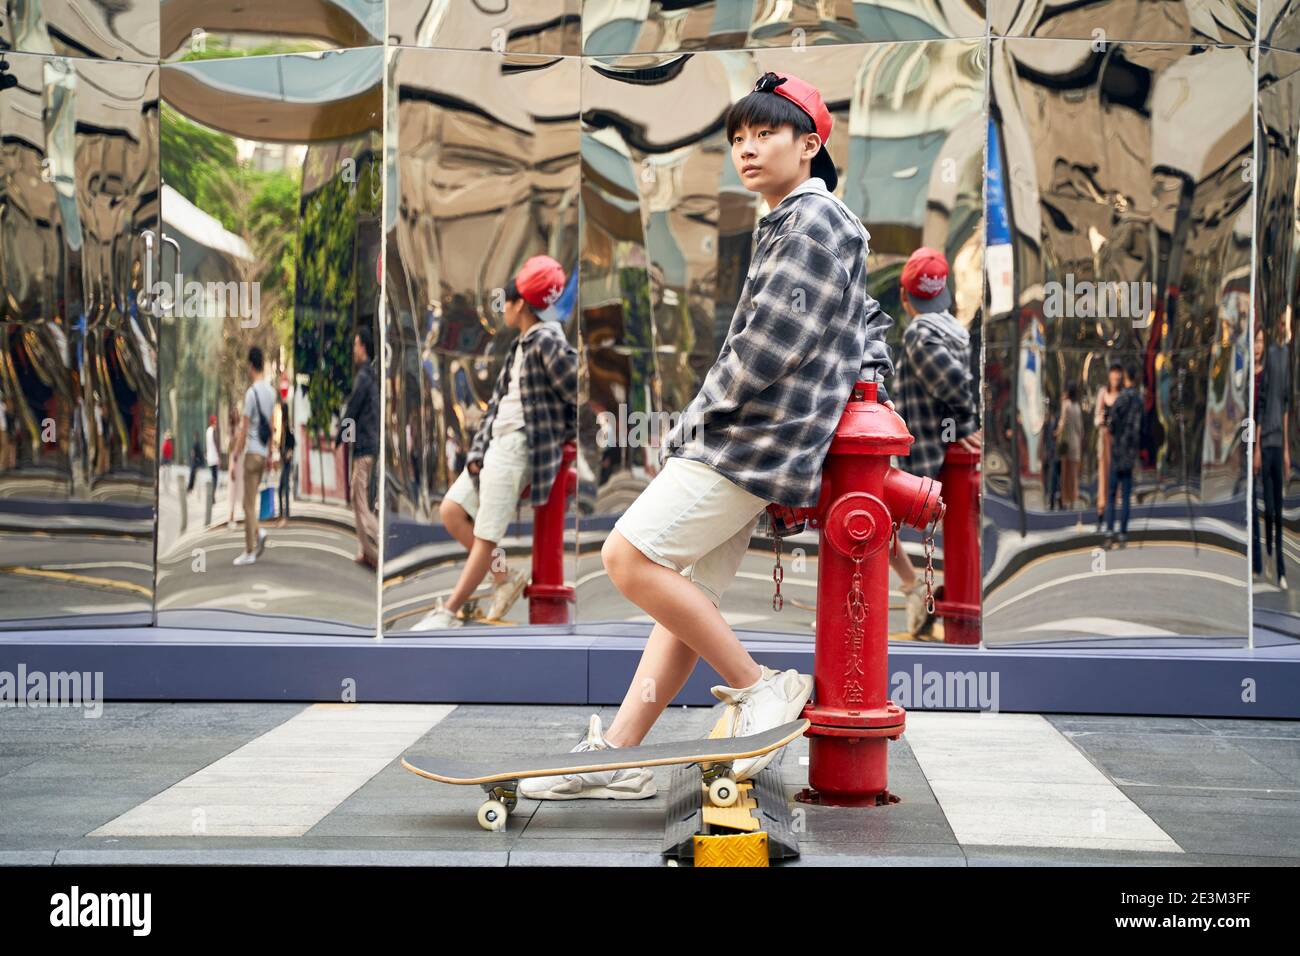 Teenager asiatische junge mit Skateboard lehnt gegen Feuer Hydrant auf Straße Stockfoto